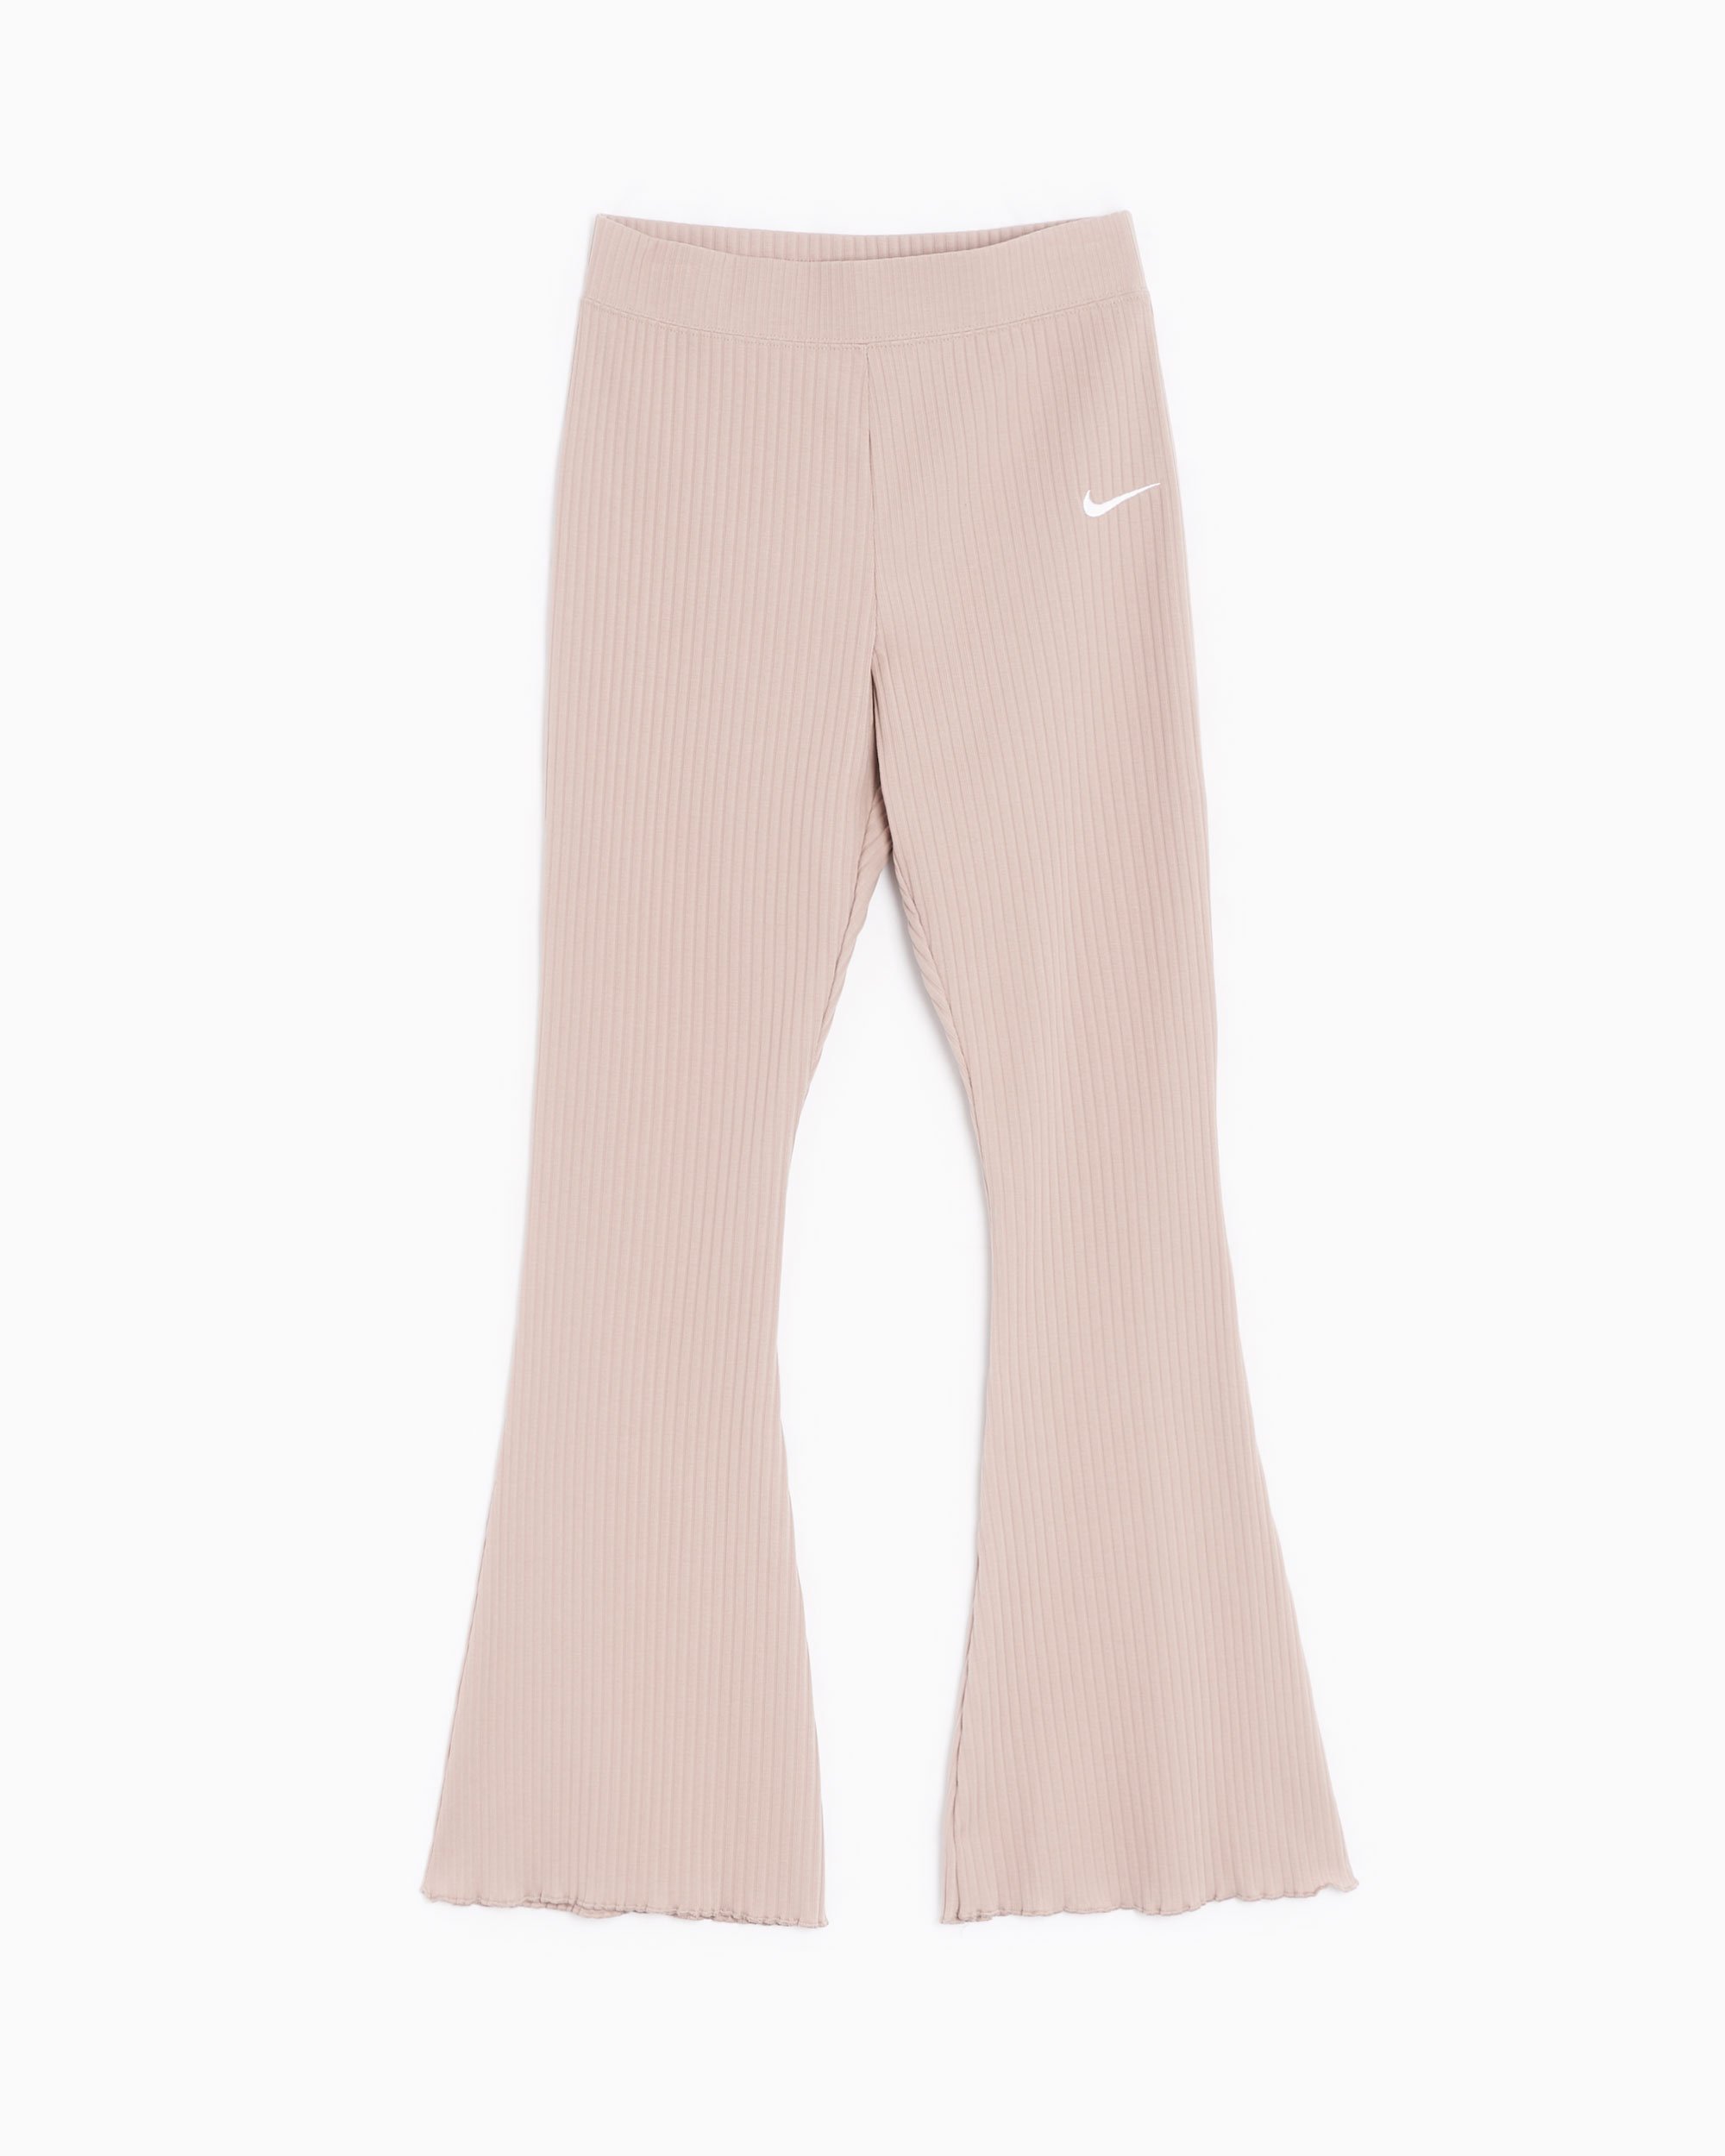 Nike Sportswear Knit Palazzo Pants  Palazzo pants, Nike pants, Sportswear